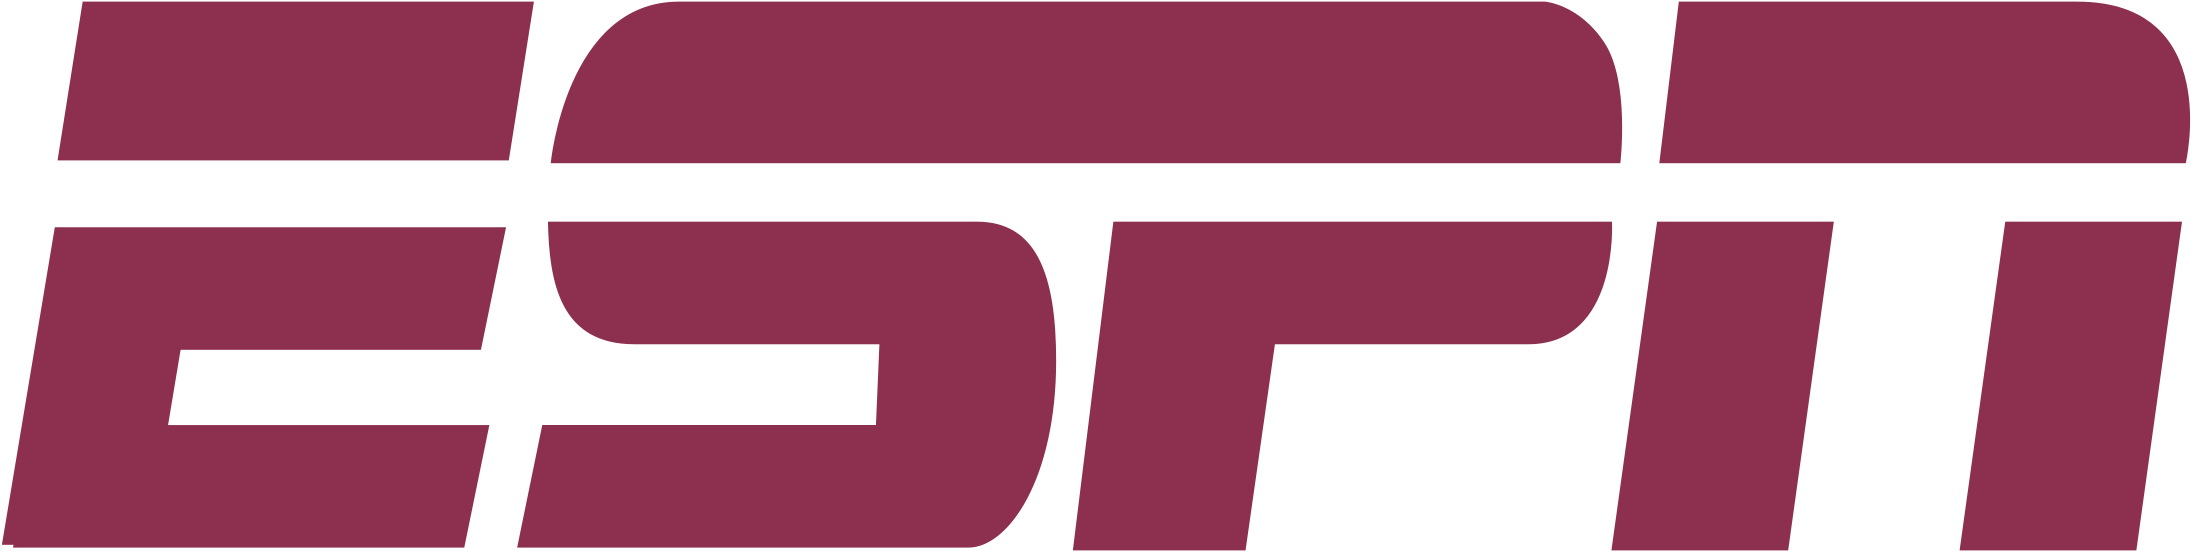 Espn Logo Png 2191 X 551